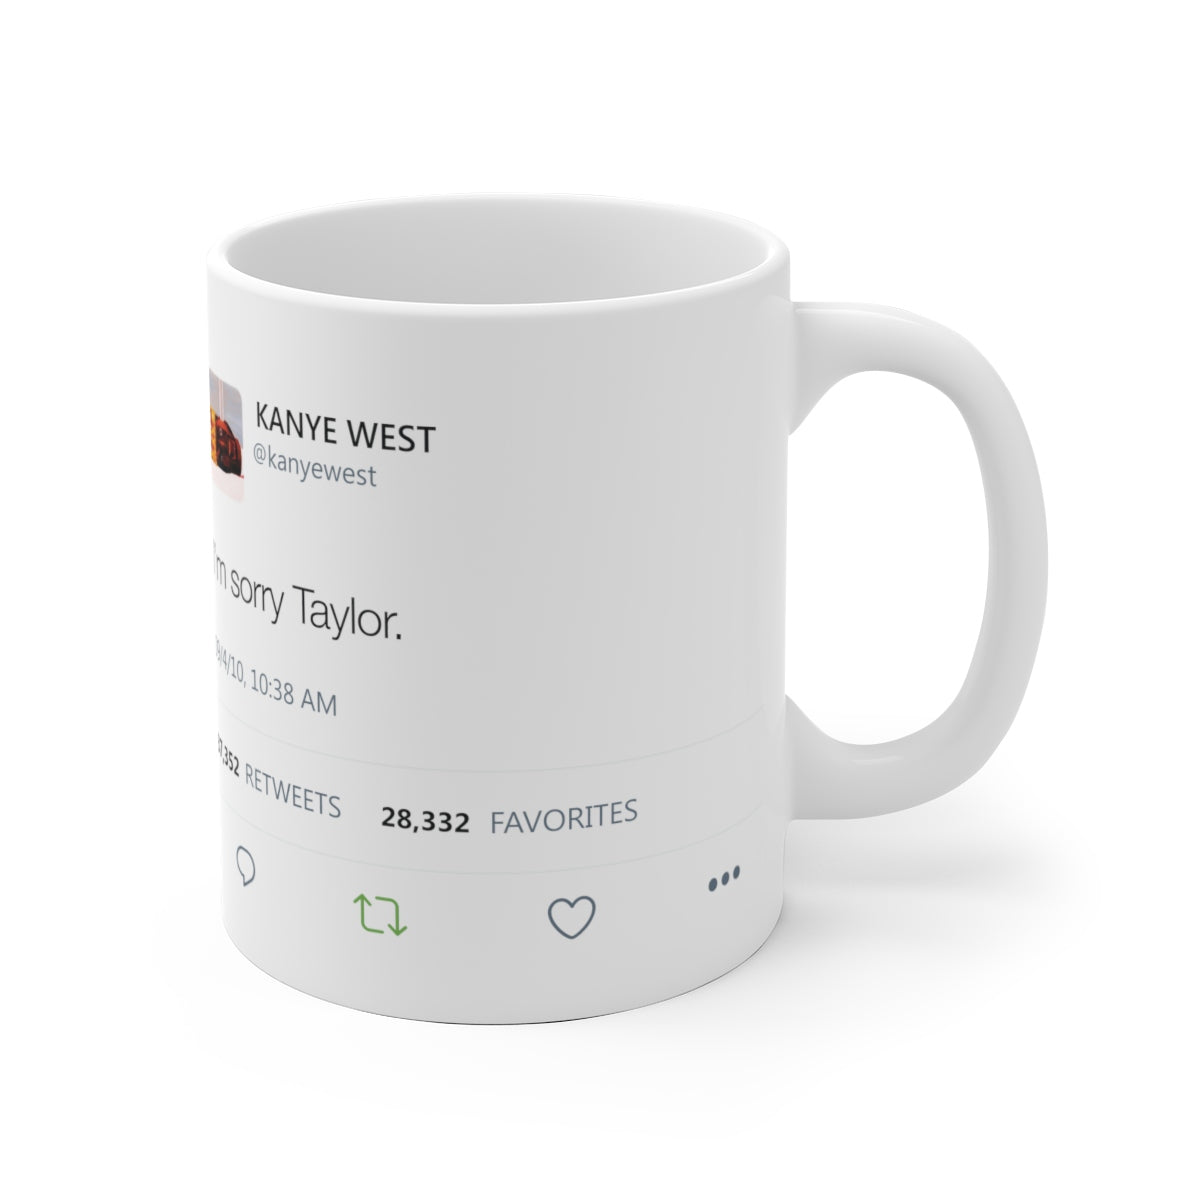 I'm sorry Taylor Kanye West Tweet Mug-Archethype